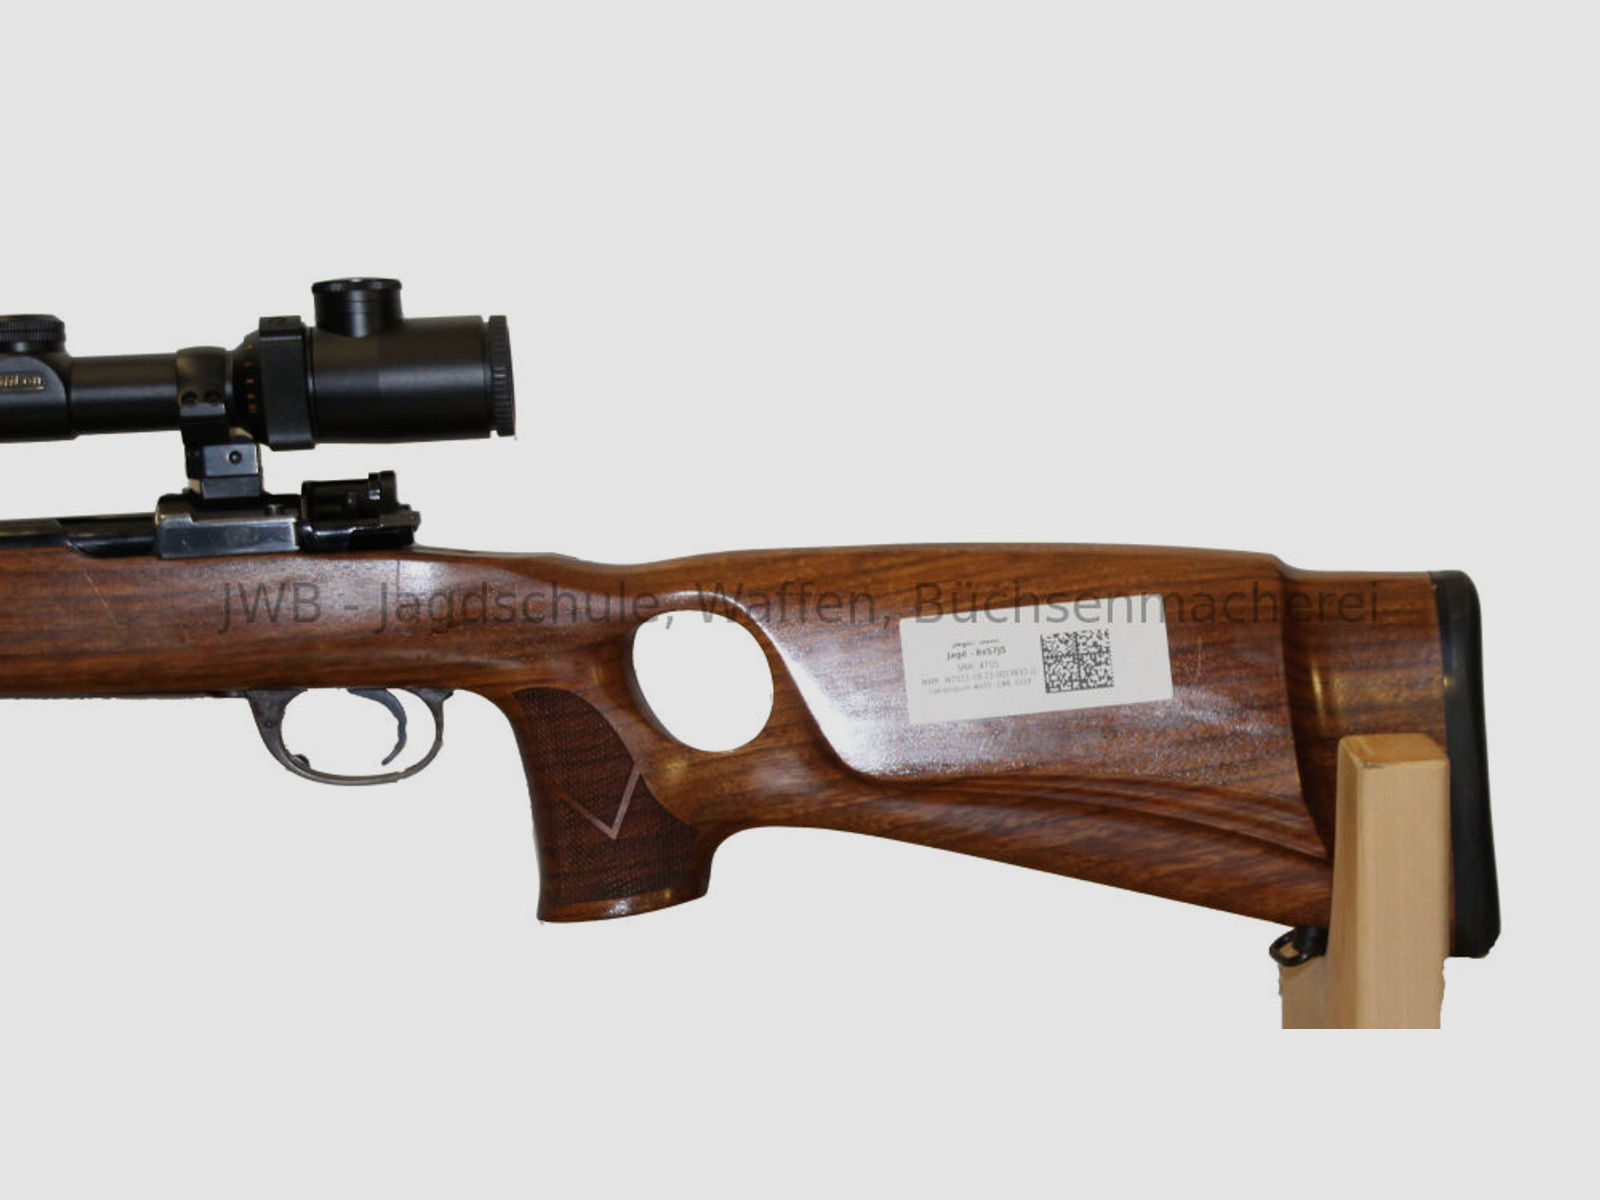 Mauser System 98, Kal. 8 x 57 IS mit Lochschaft - ansehen lohnt sich